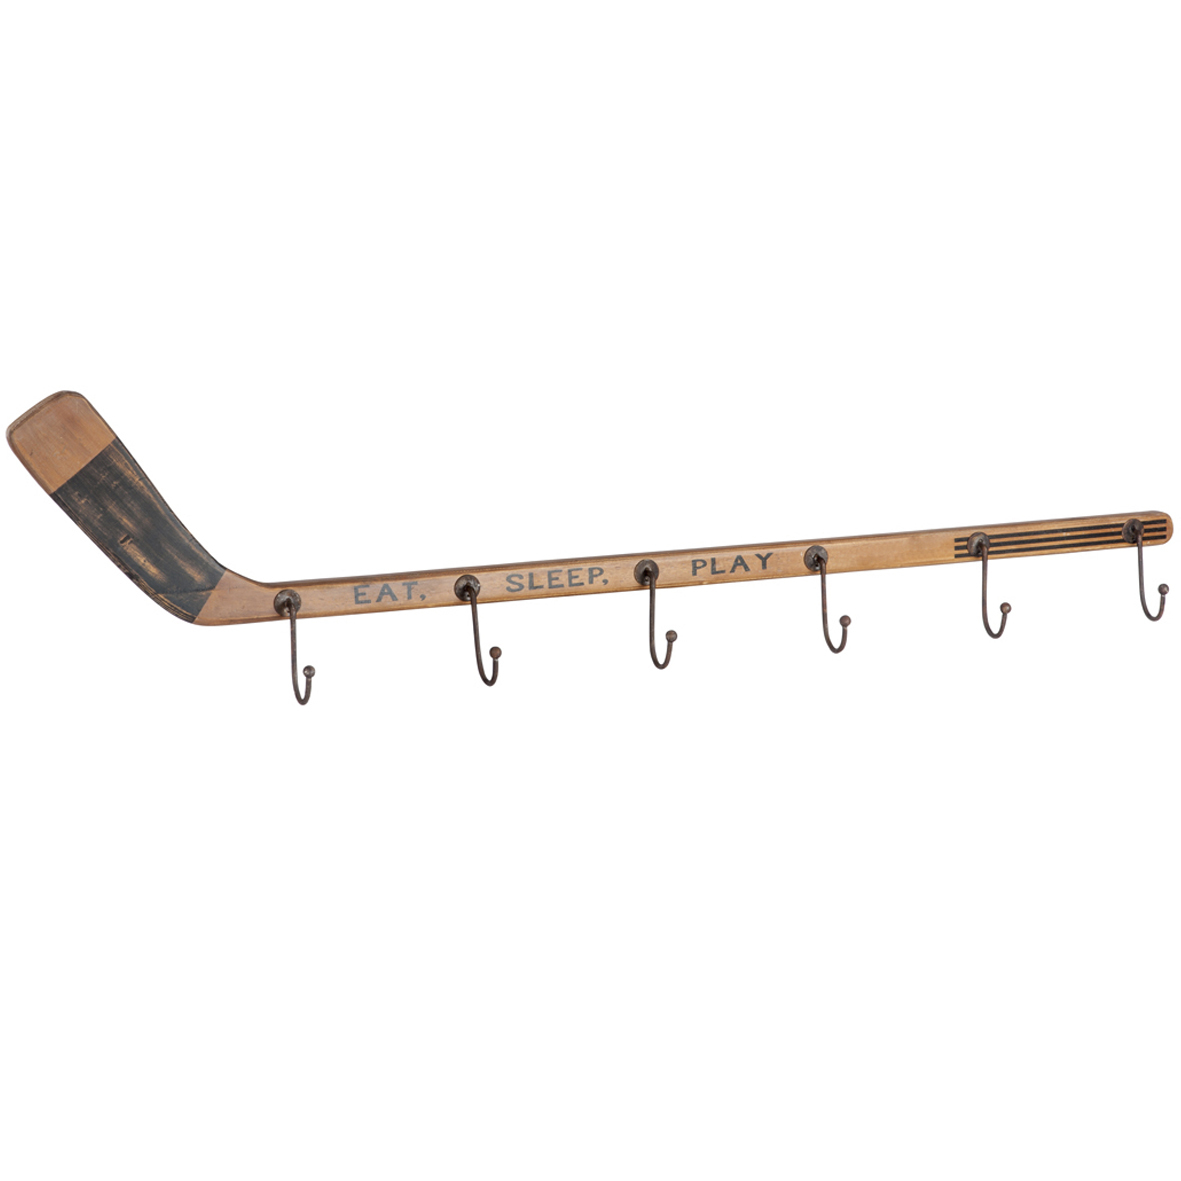 вешалка для хоккейной формы из труб пвх размеры